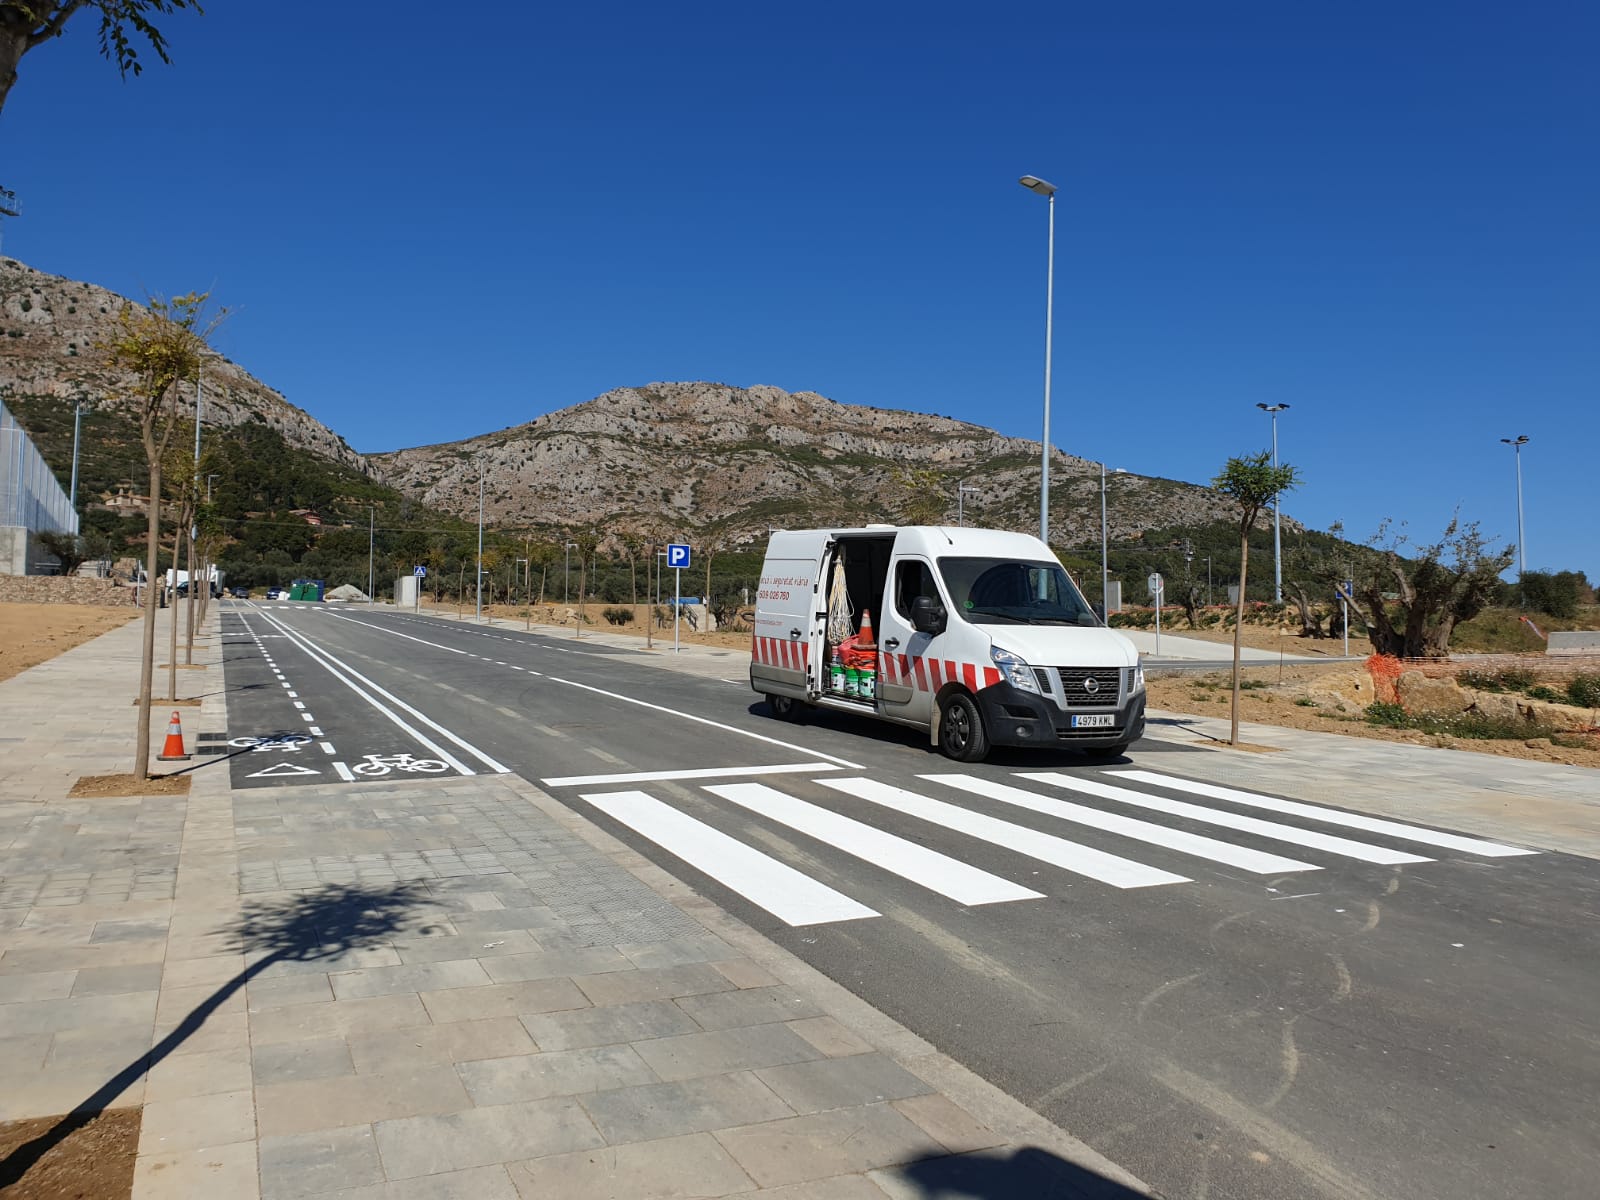 Paso de peatones en Torroella de Montgri, Girona Crossbasa, especialistas en señalización y pintura vial Pintura de paso de peatones en Girona, concretamente en Torroella de Montgri.